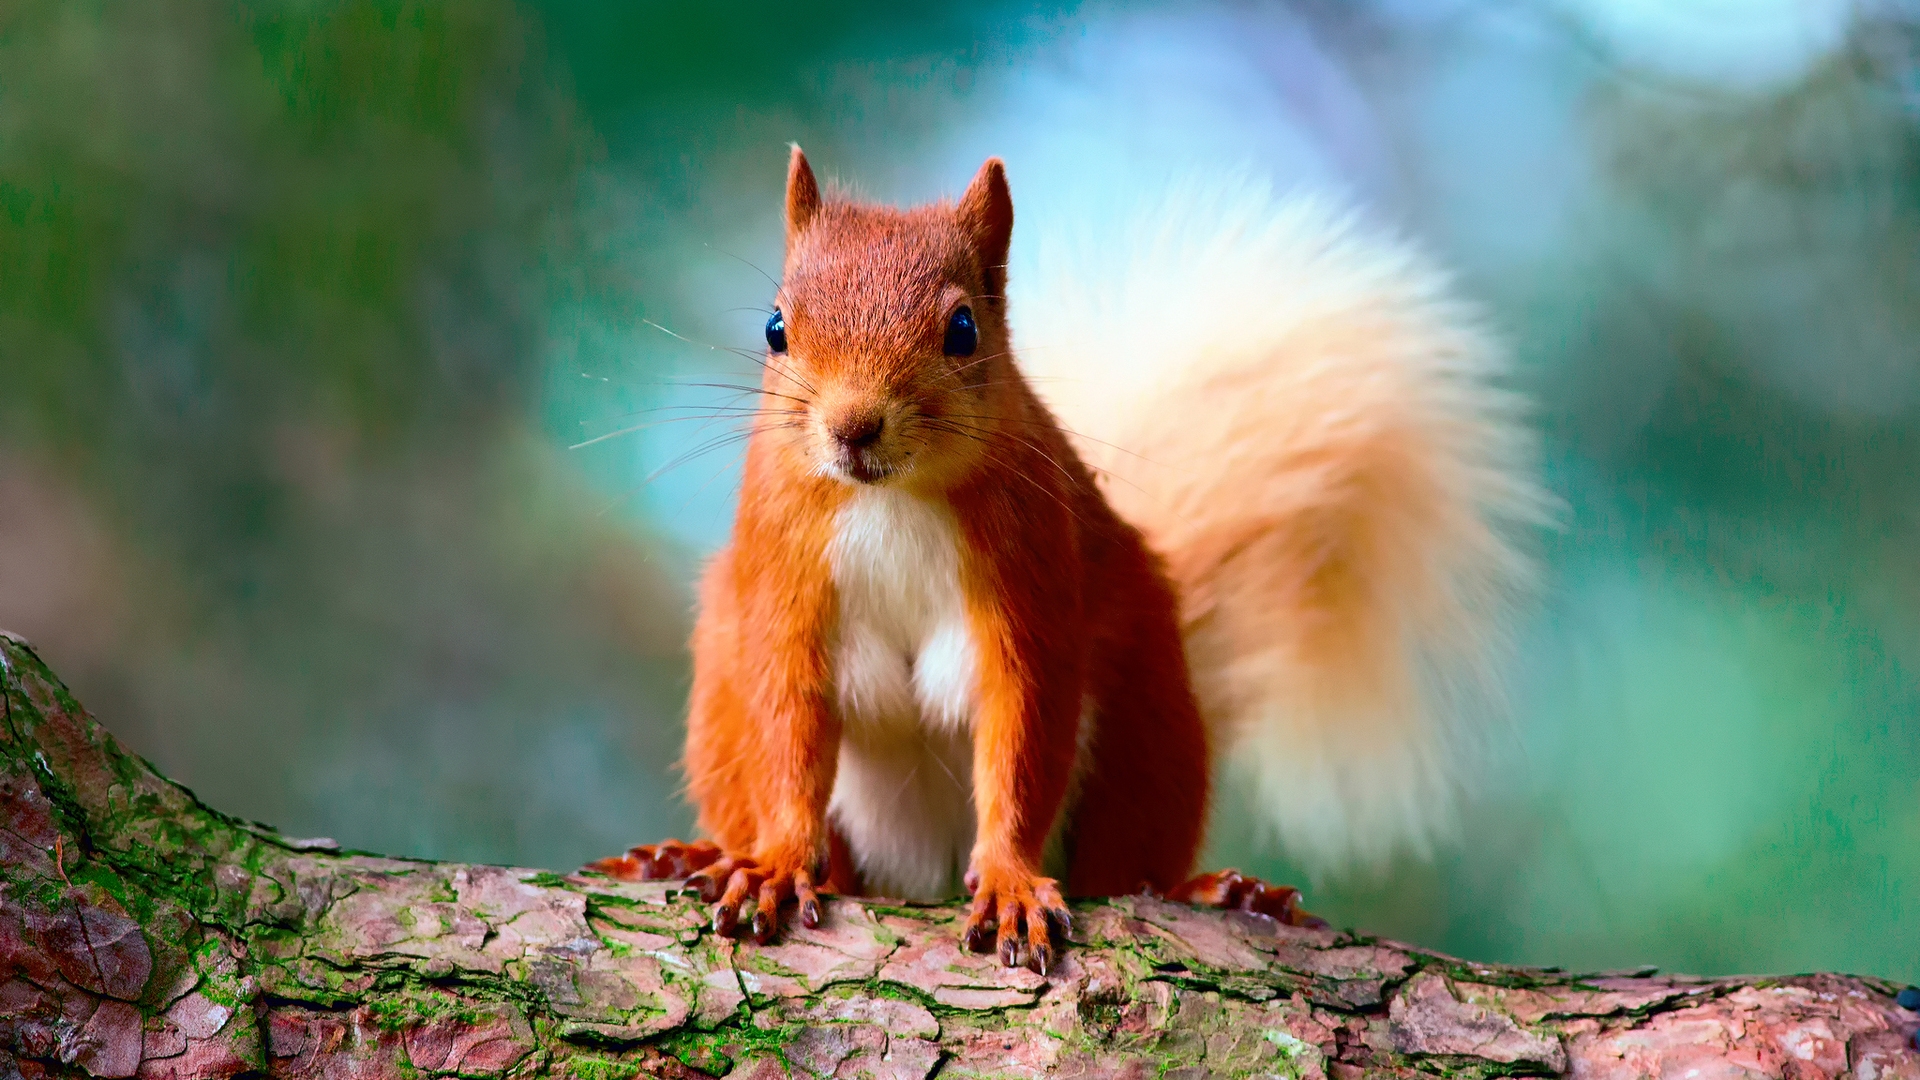 16,497 Squirrel Wallpaper Images, Stock Photos & Vectors | Shutterstock